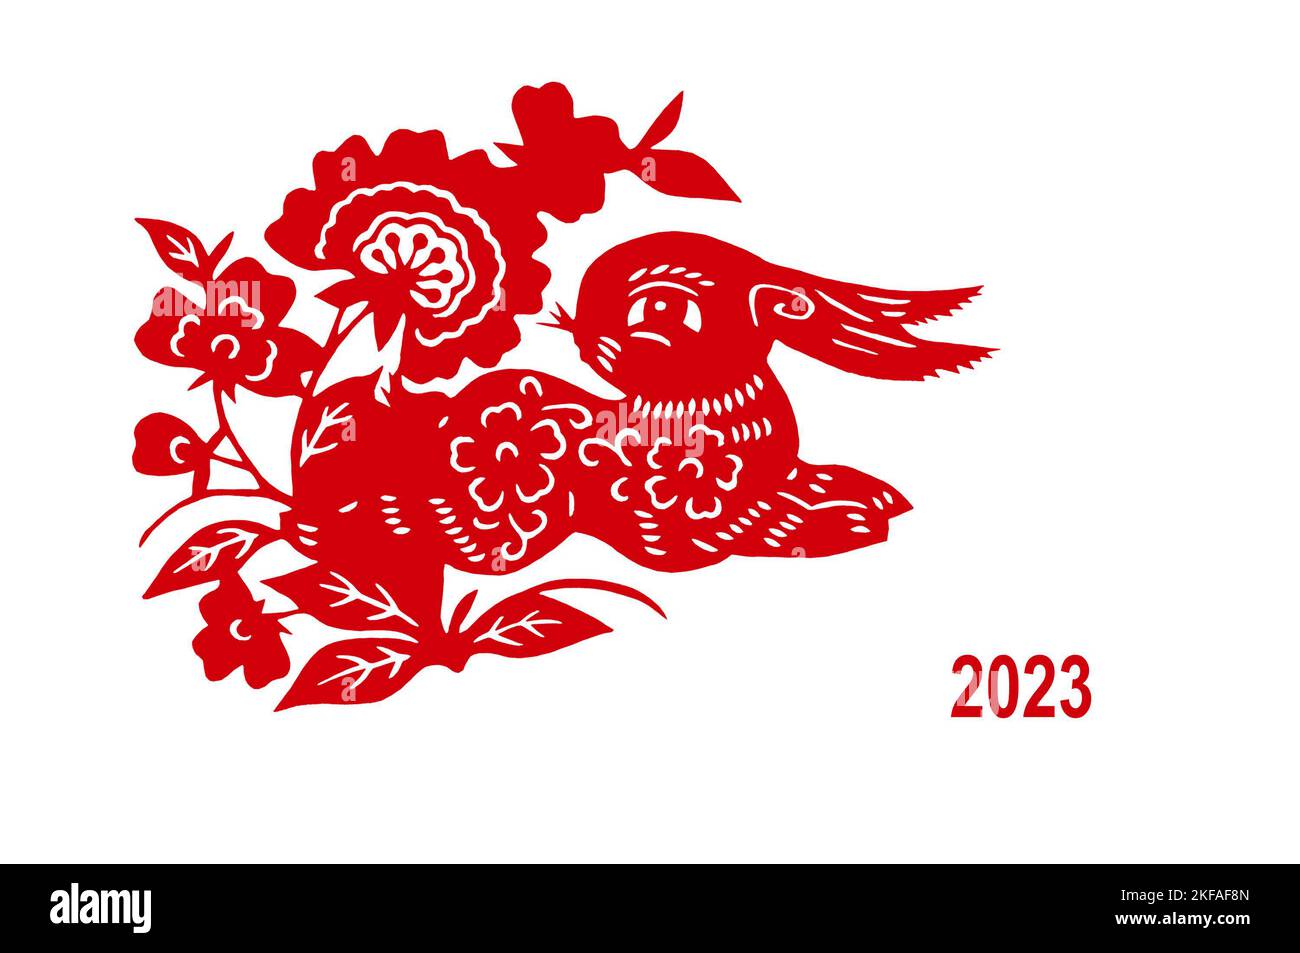 2023, coniglio di carta rossa tagliato a mano cinese isolato su sfondo bianco, felice biglietto di auguri di nuovo anno Foto Stock